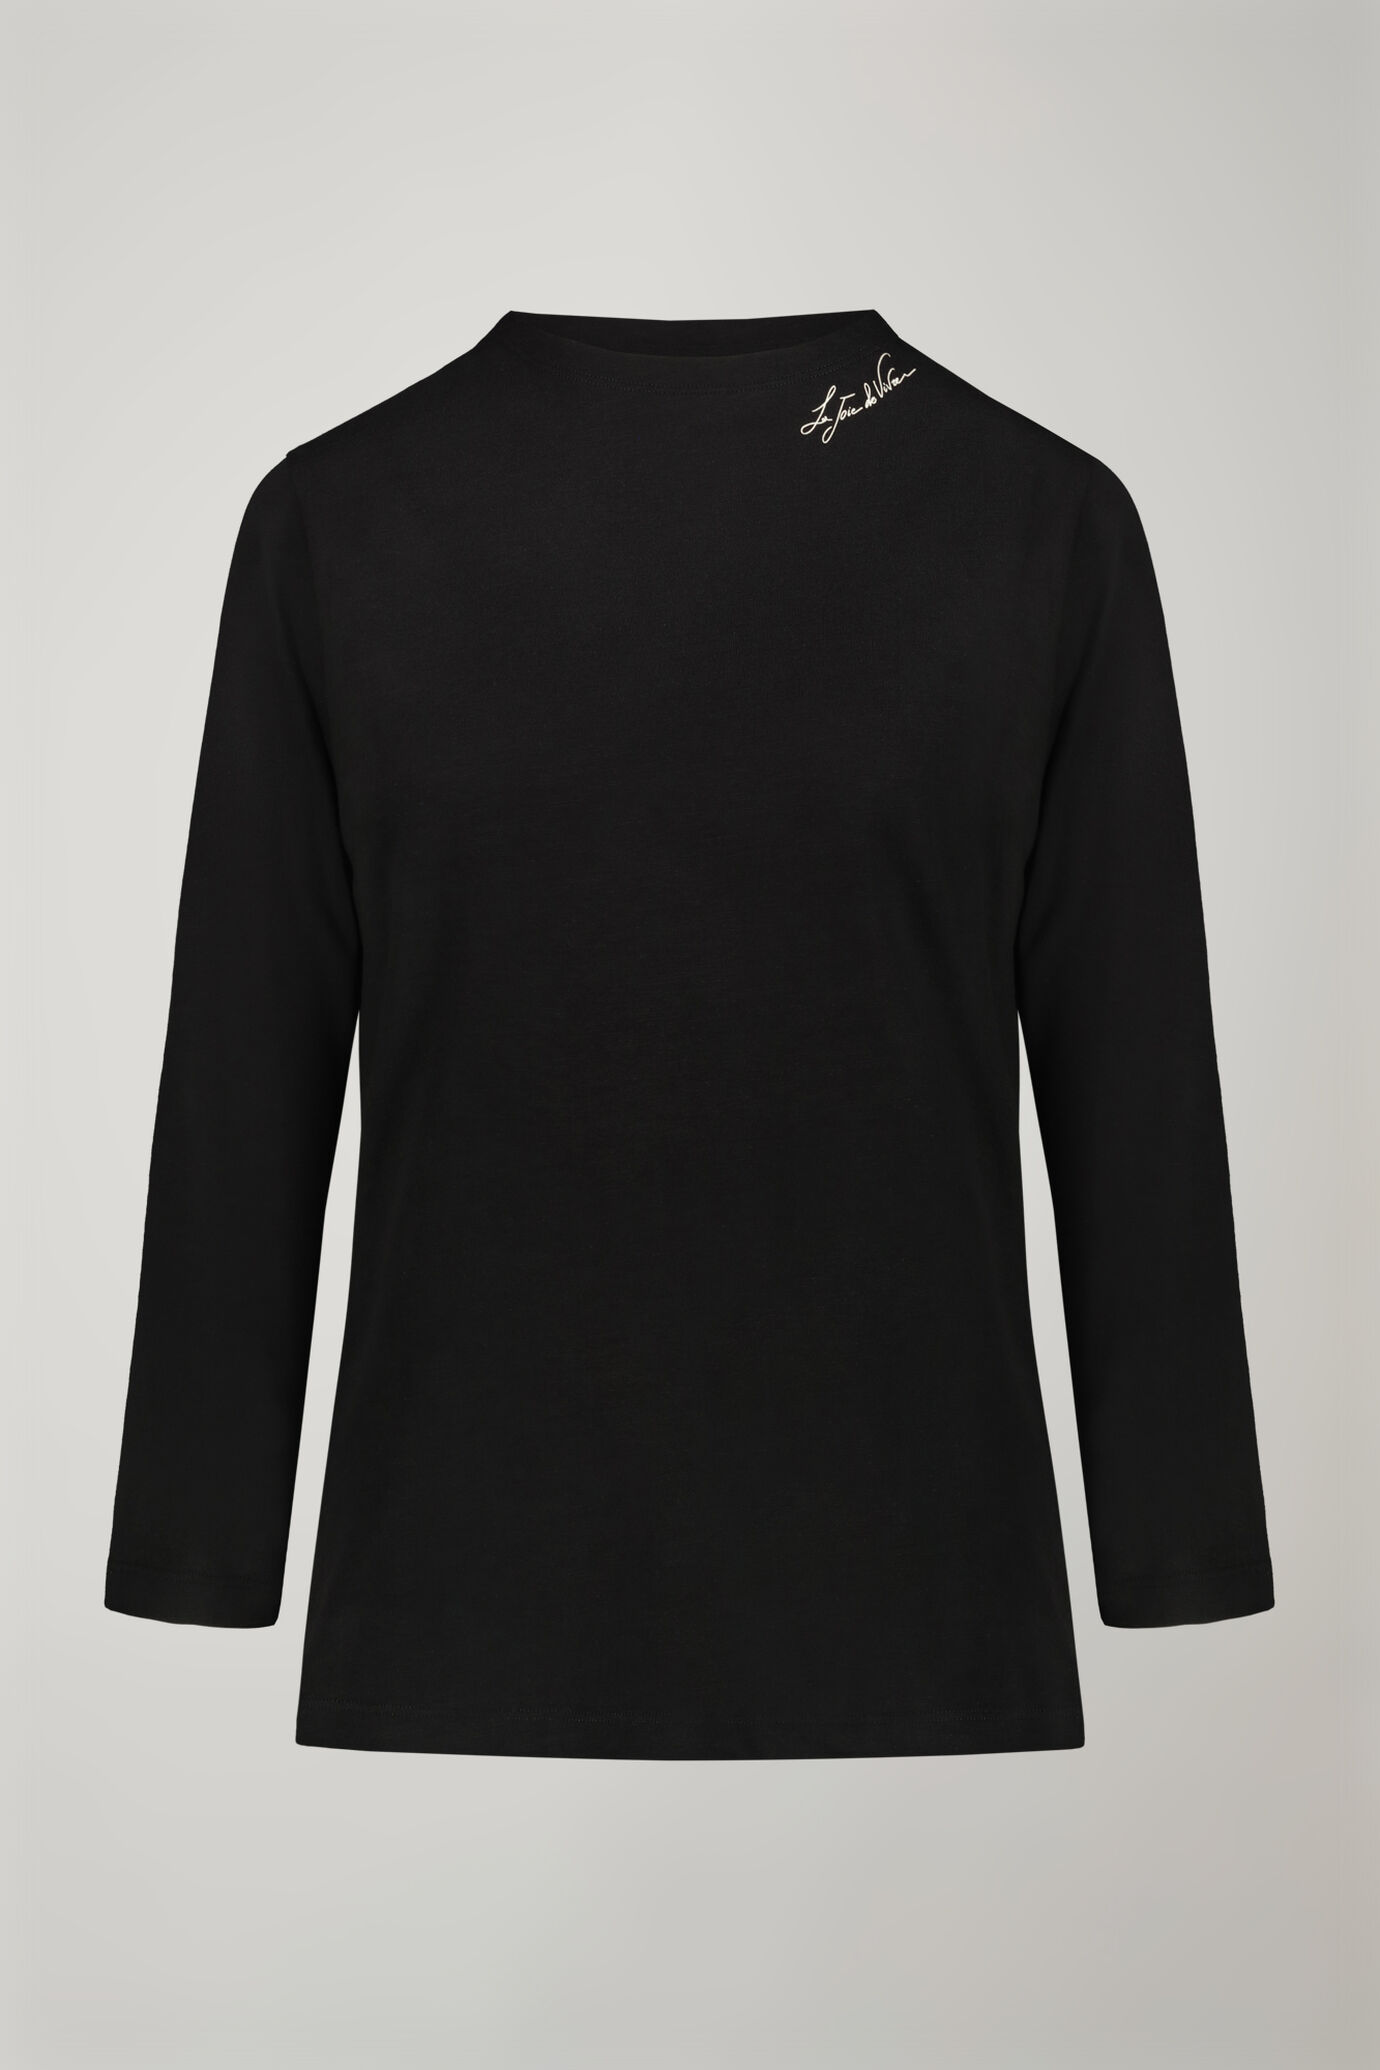 Damen-T-Shirt mit V-Ausschnitt aus 100 % Baumwolle in normaler Passform image number 4